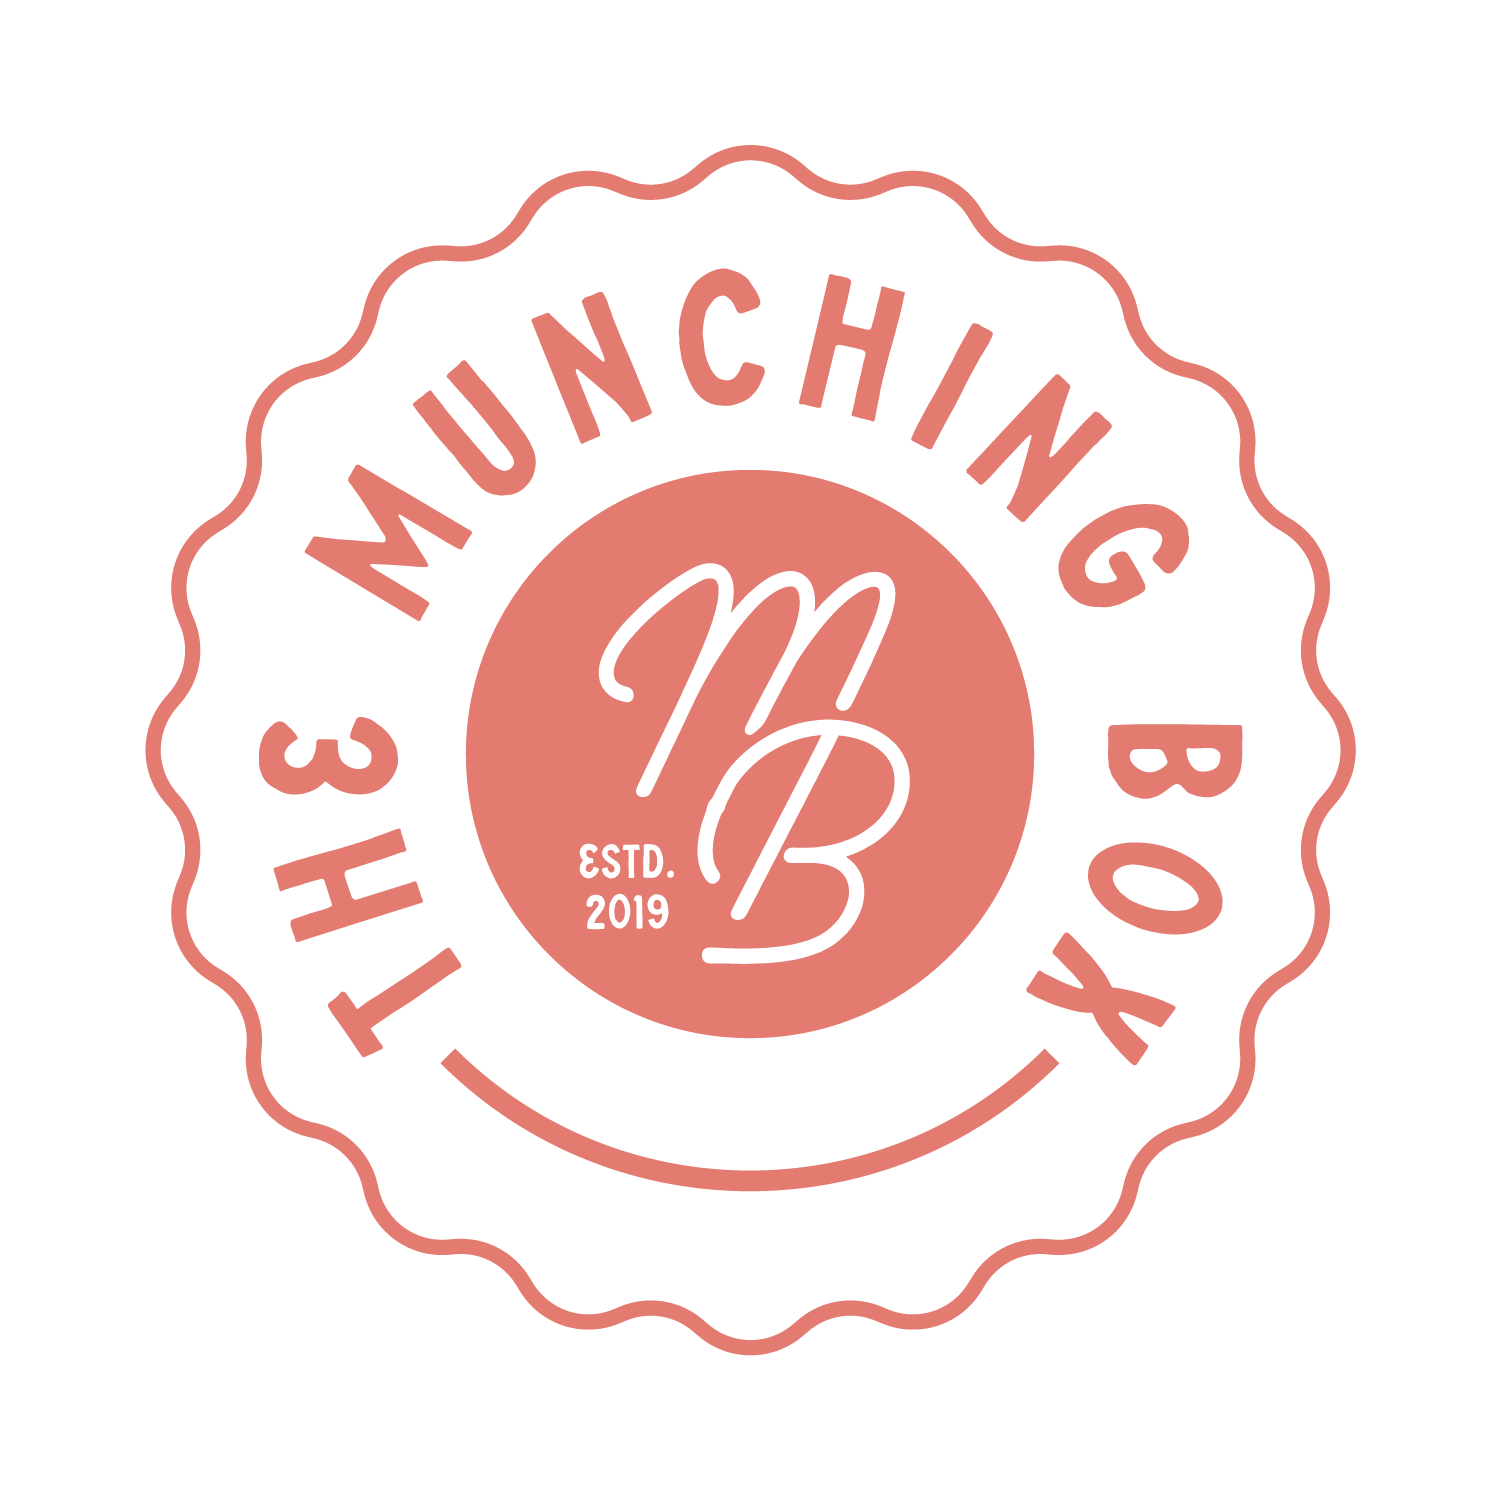 The Munching Box